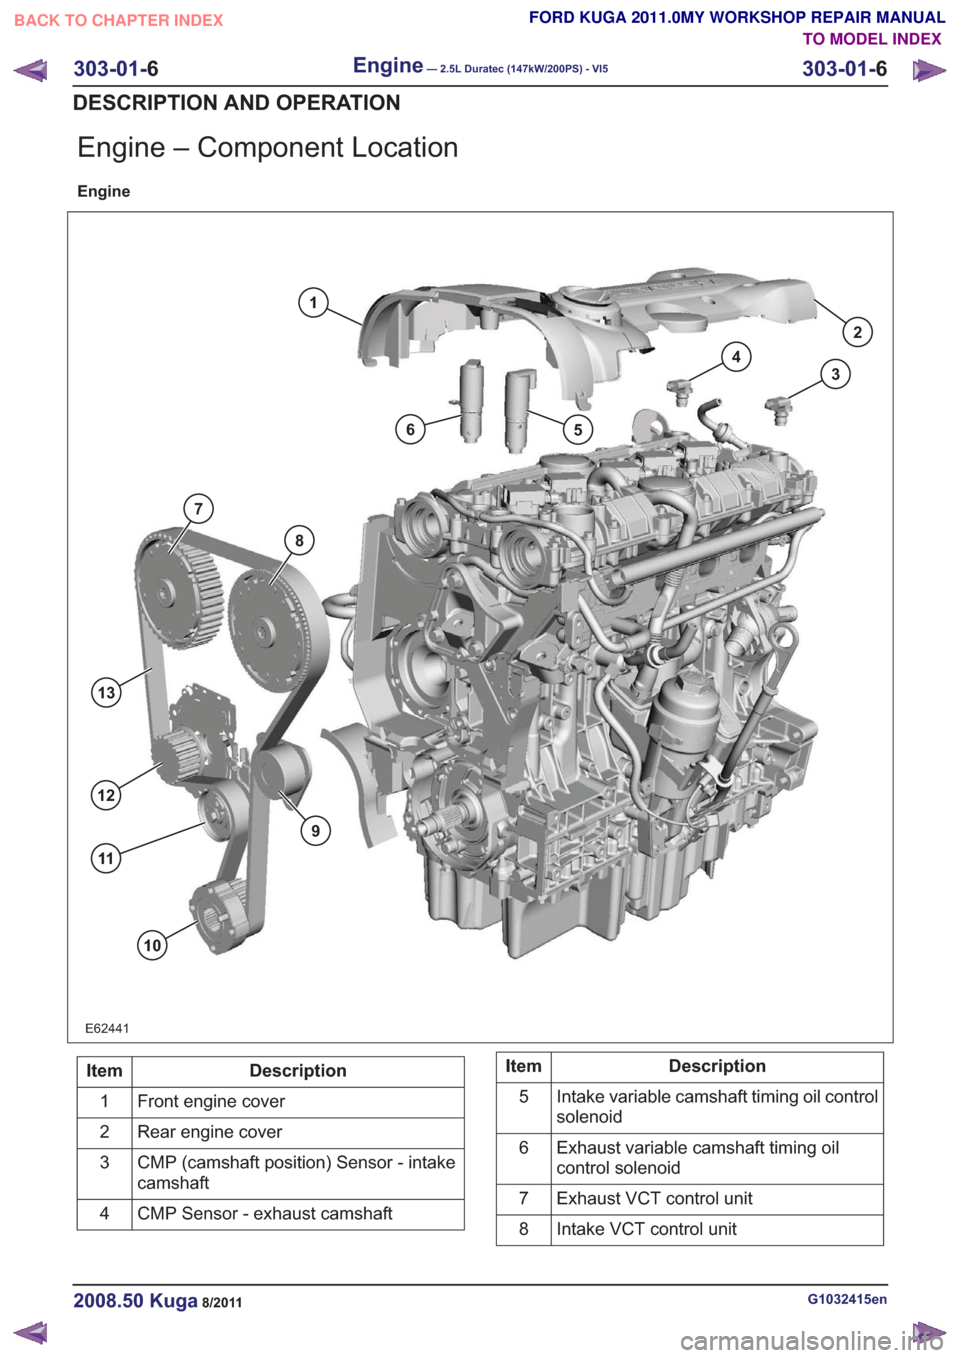 FORD KUGA 2011 1.G Workshop Manual Engine – Component Location
Engine
E62441
1
65
4
3
2
9
10
13
12
11
8
7
Description
Item
Front engine cover
1
Rear engine cover
2
CMP (camshaft position) Sensor - intake
camshaft
3
CMP Sensor - exhau